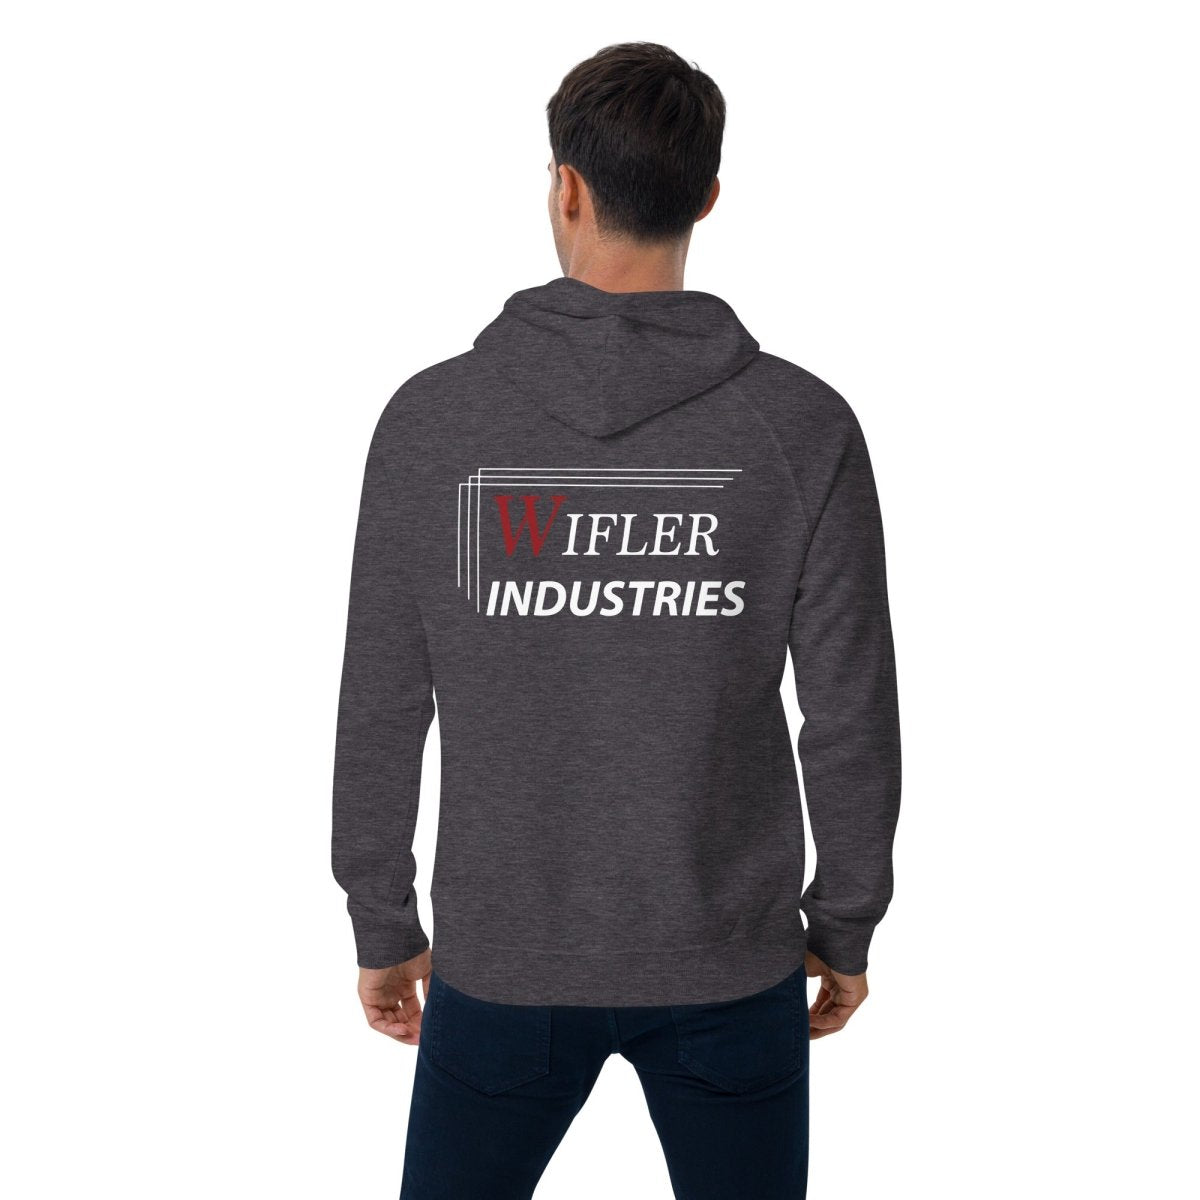 Unisex eco raglan hoodie - Wifler Industries--Wifler Industries-2185570_13758--Charcoal Melange-XS--Unisex eco raglan hoodie-